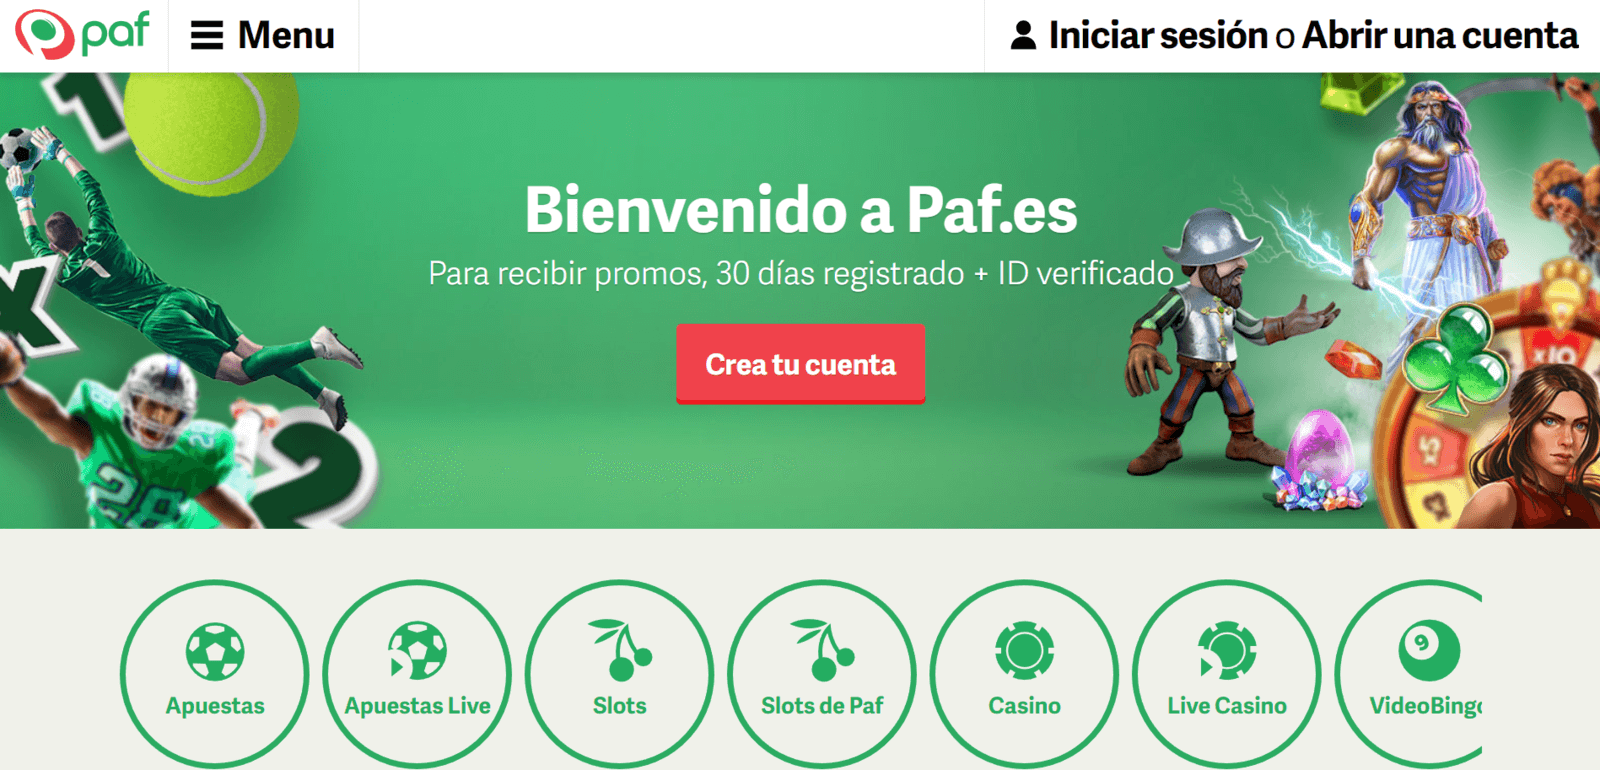 Apuestas deportivas de Paf online para jugar en España